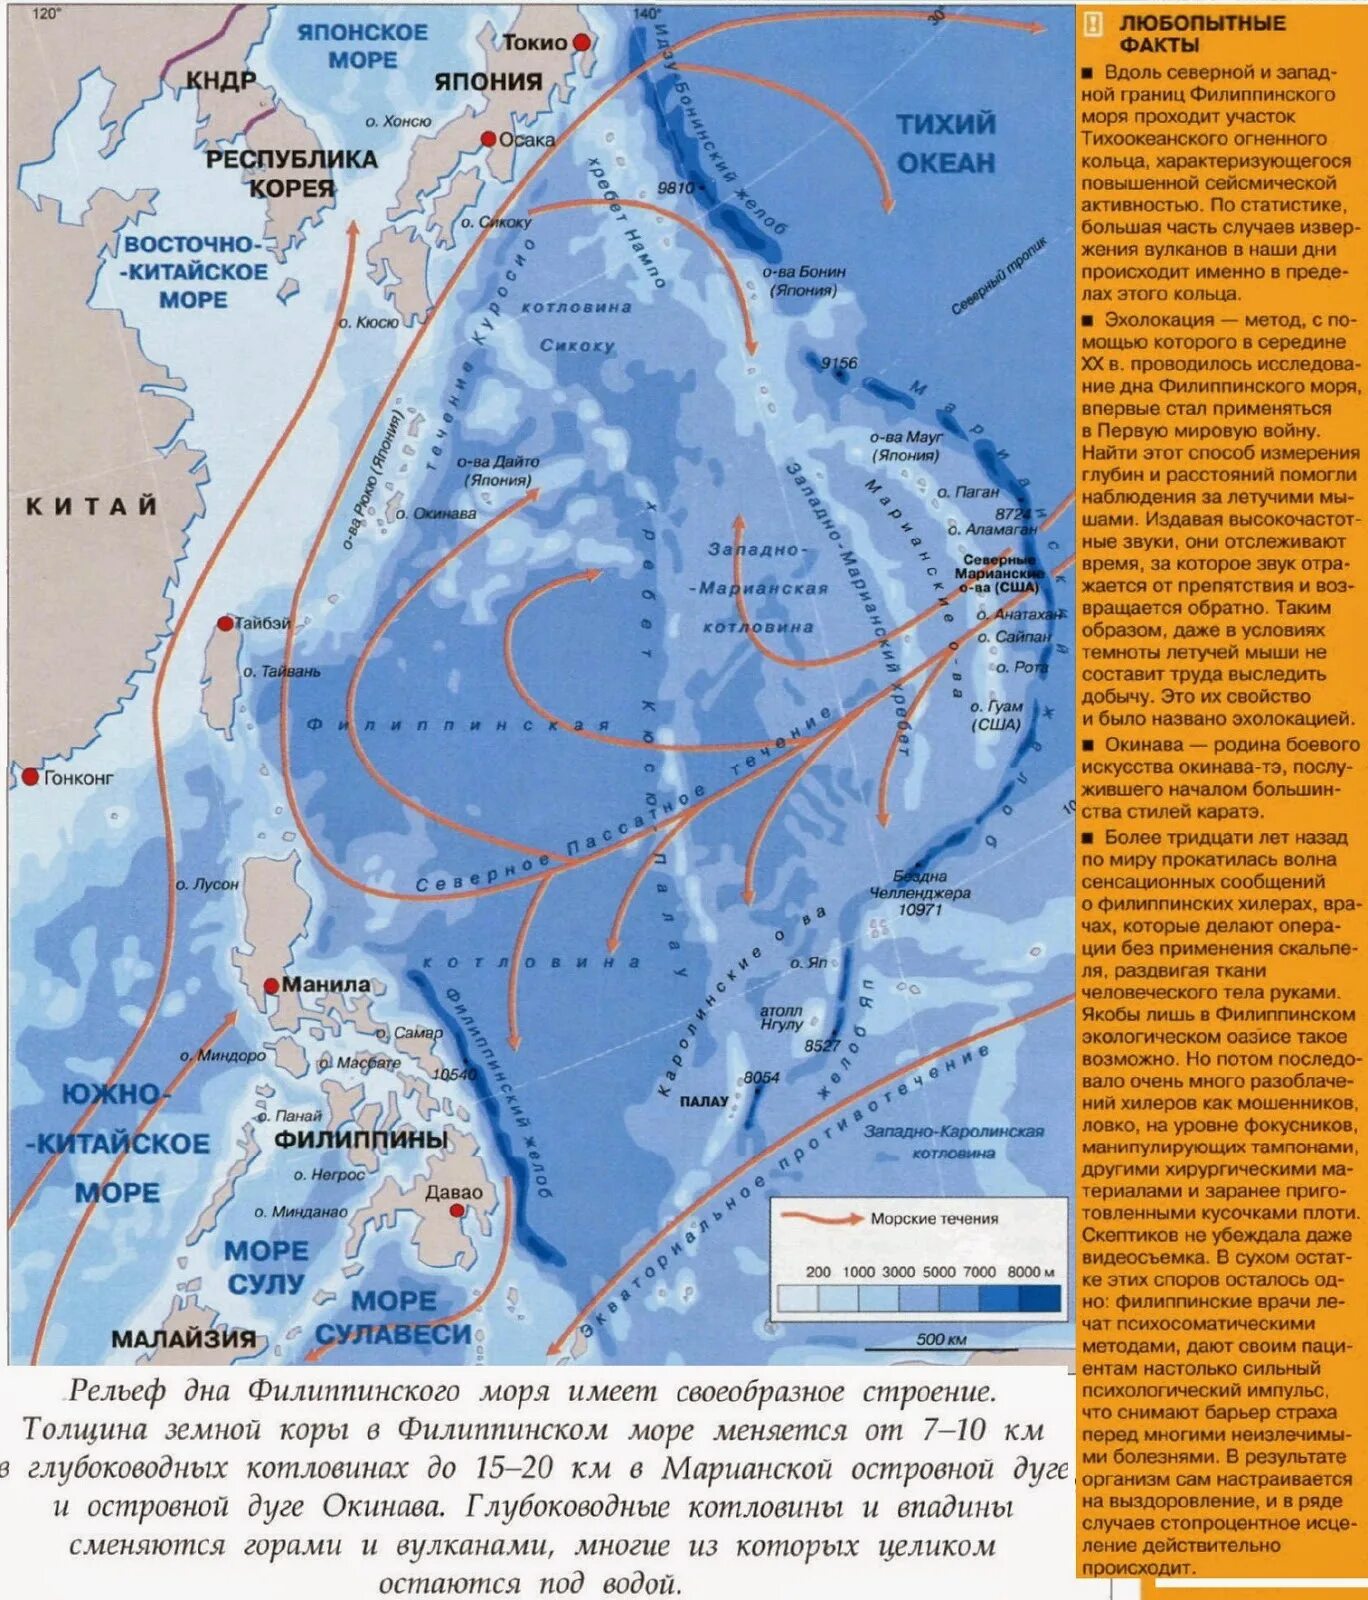 Морские течения действующие в тихом океане. Течения в Восточно-китайском море. Течения Южно китайского моря. Климатическая карта филиппинского моря. Течение в Южно китайском море на карте.